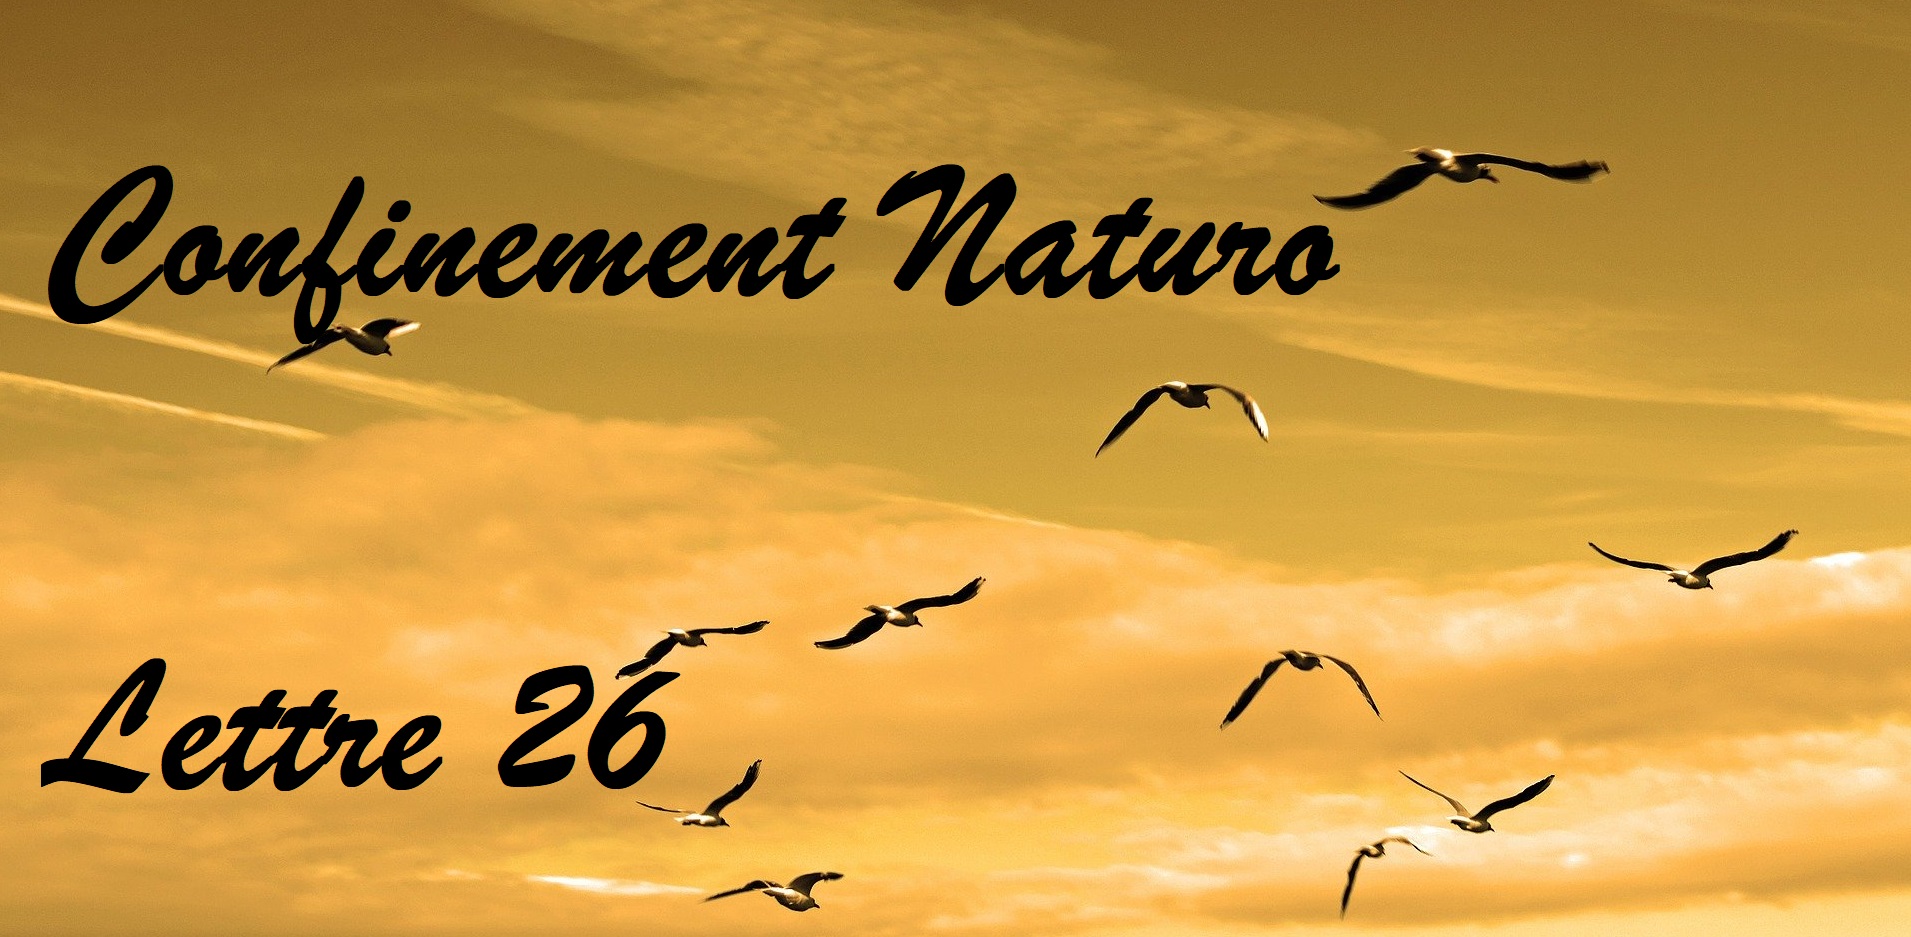 Confinement Naturo (Lettre 26) Liberté chérie